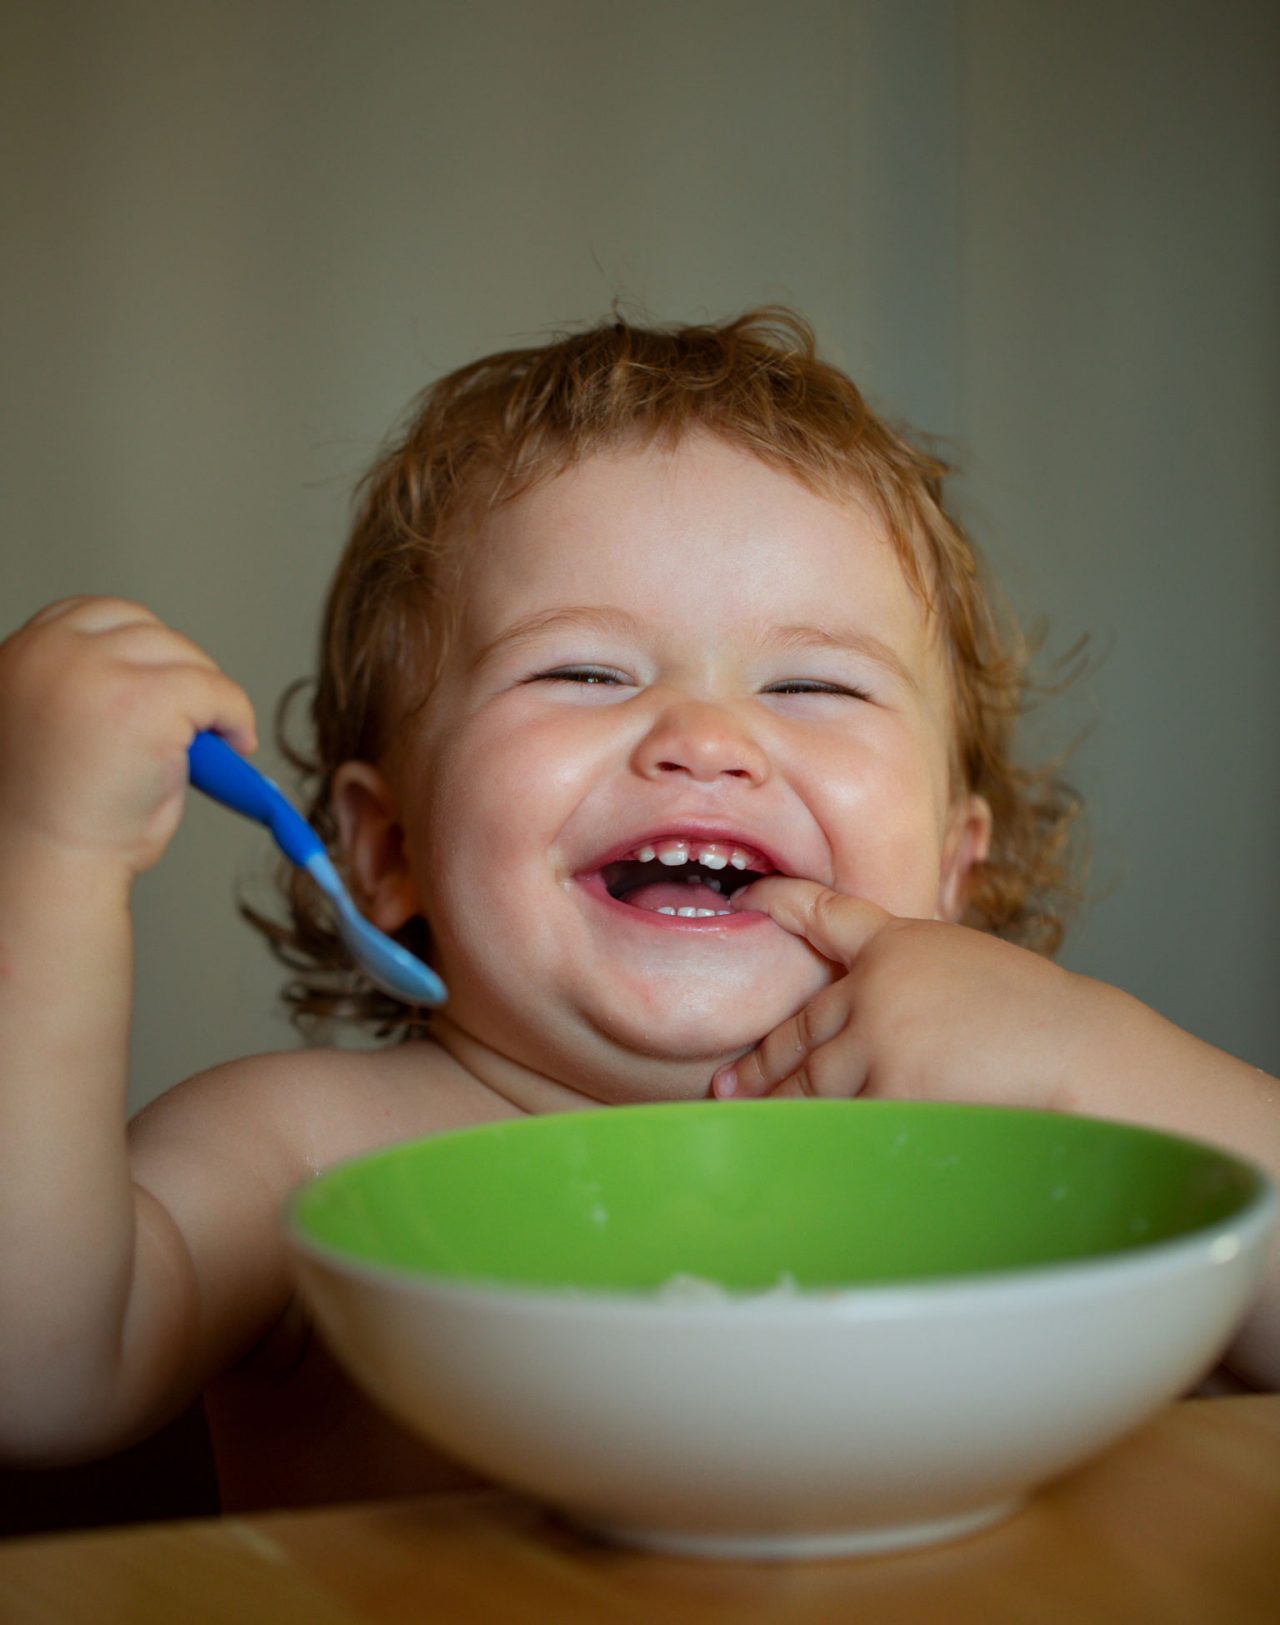 Un enfant mange seul et sourit